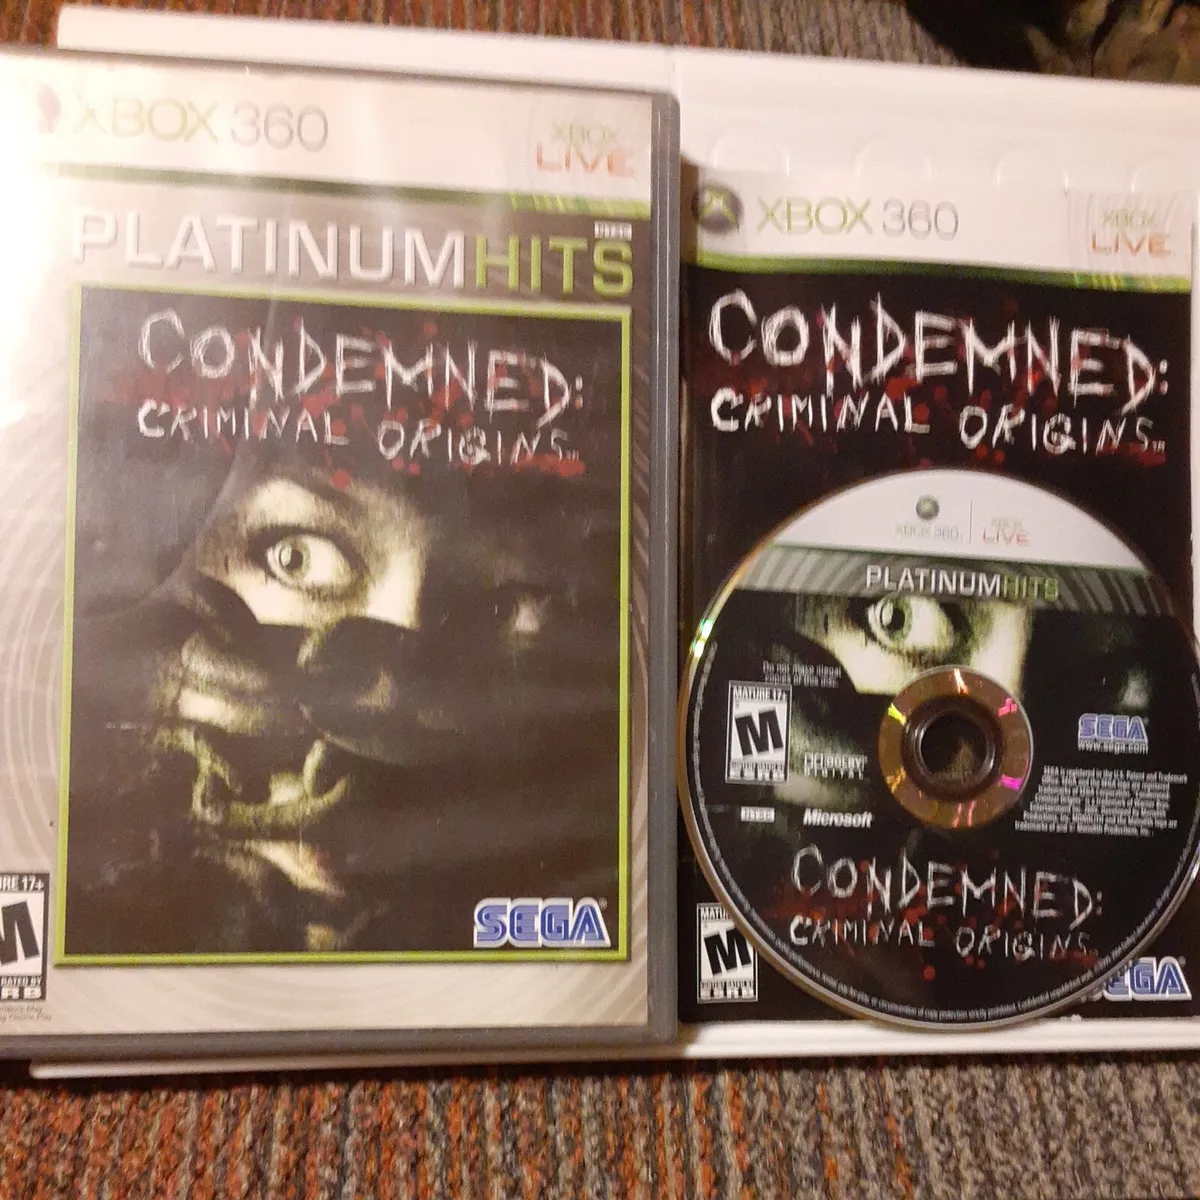 Condemned para Xbox 360 (2005)